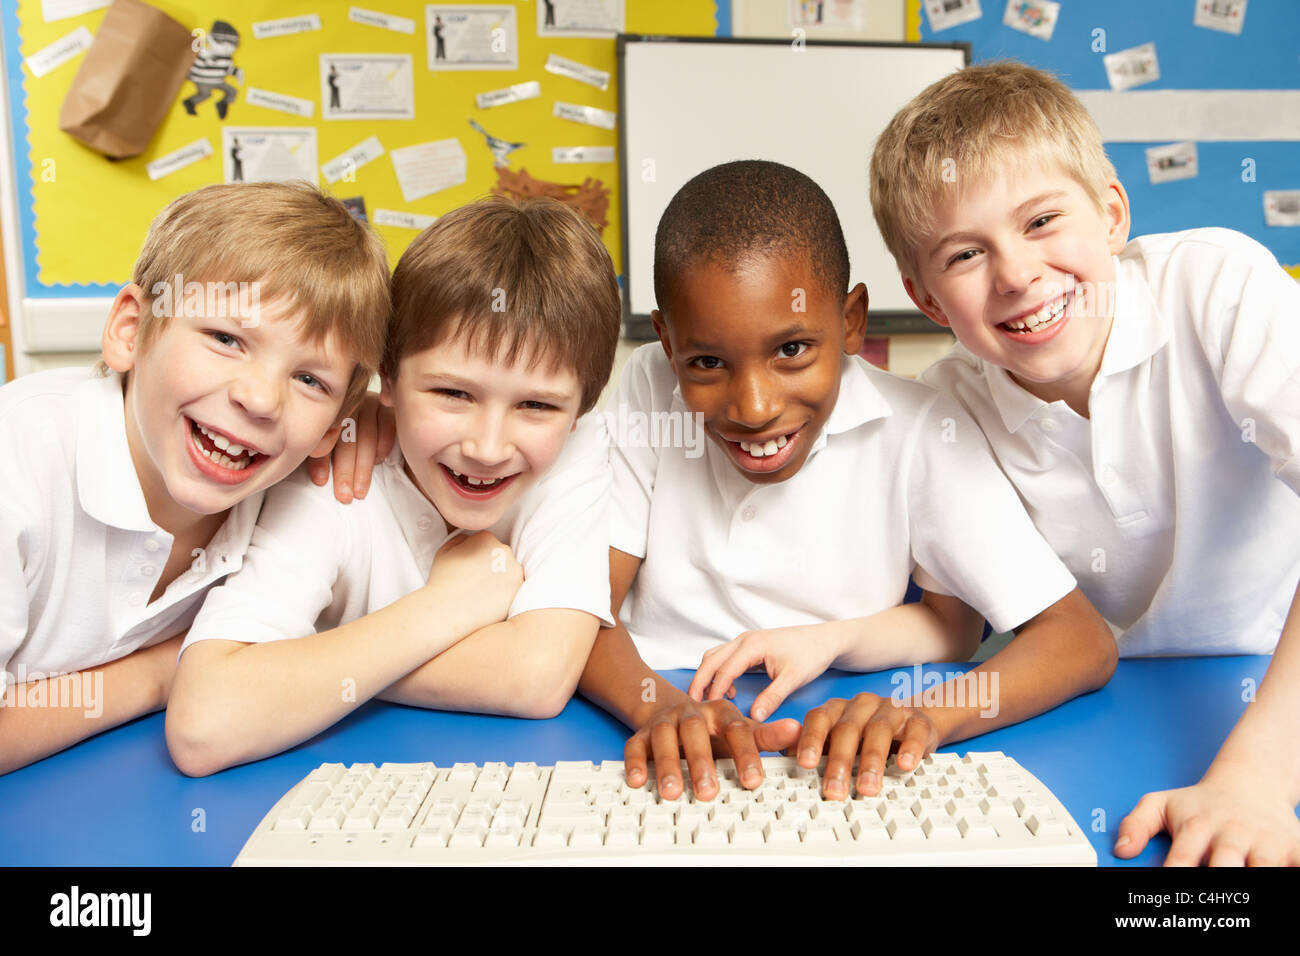 Schulkinder in es Klasse mit Computern Stockfoto